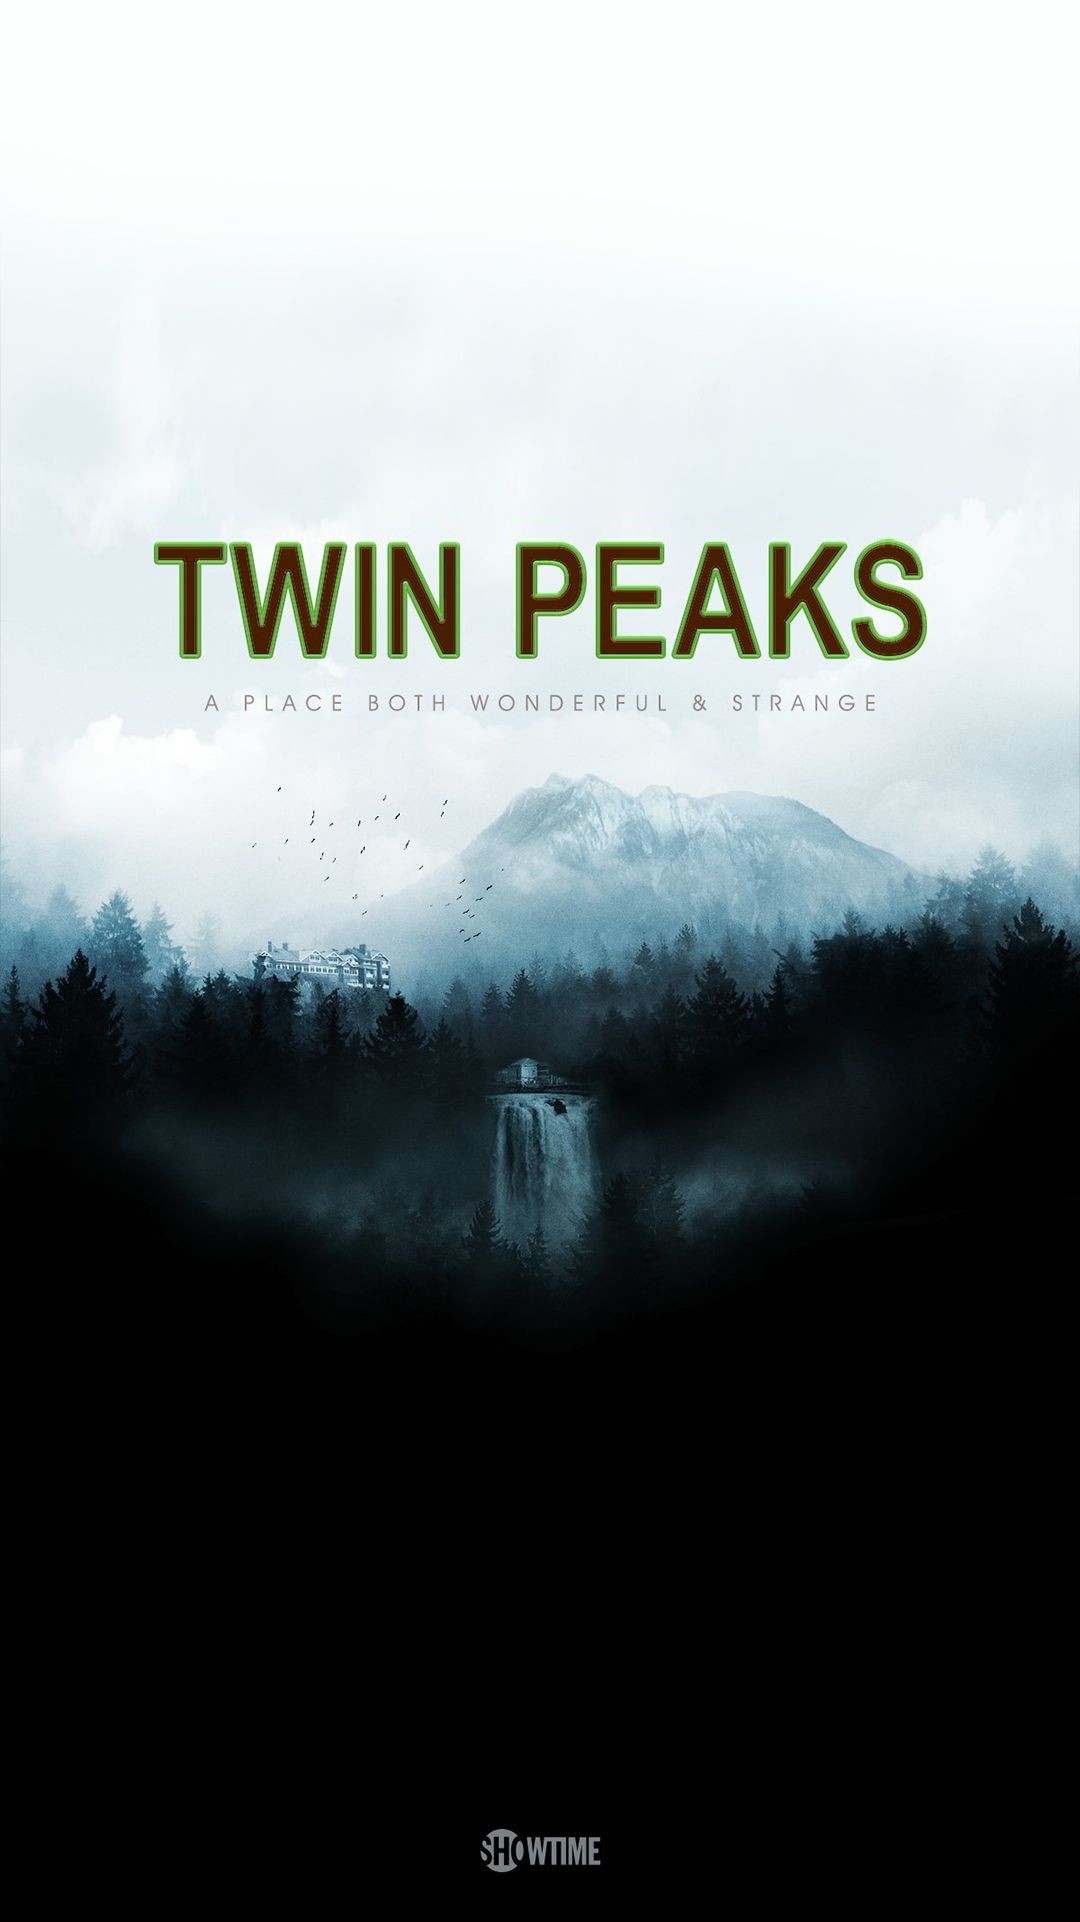 Twin Peaks Phone Wallpaper Hd - HD Wallpaper 